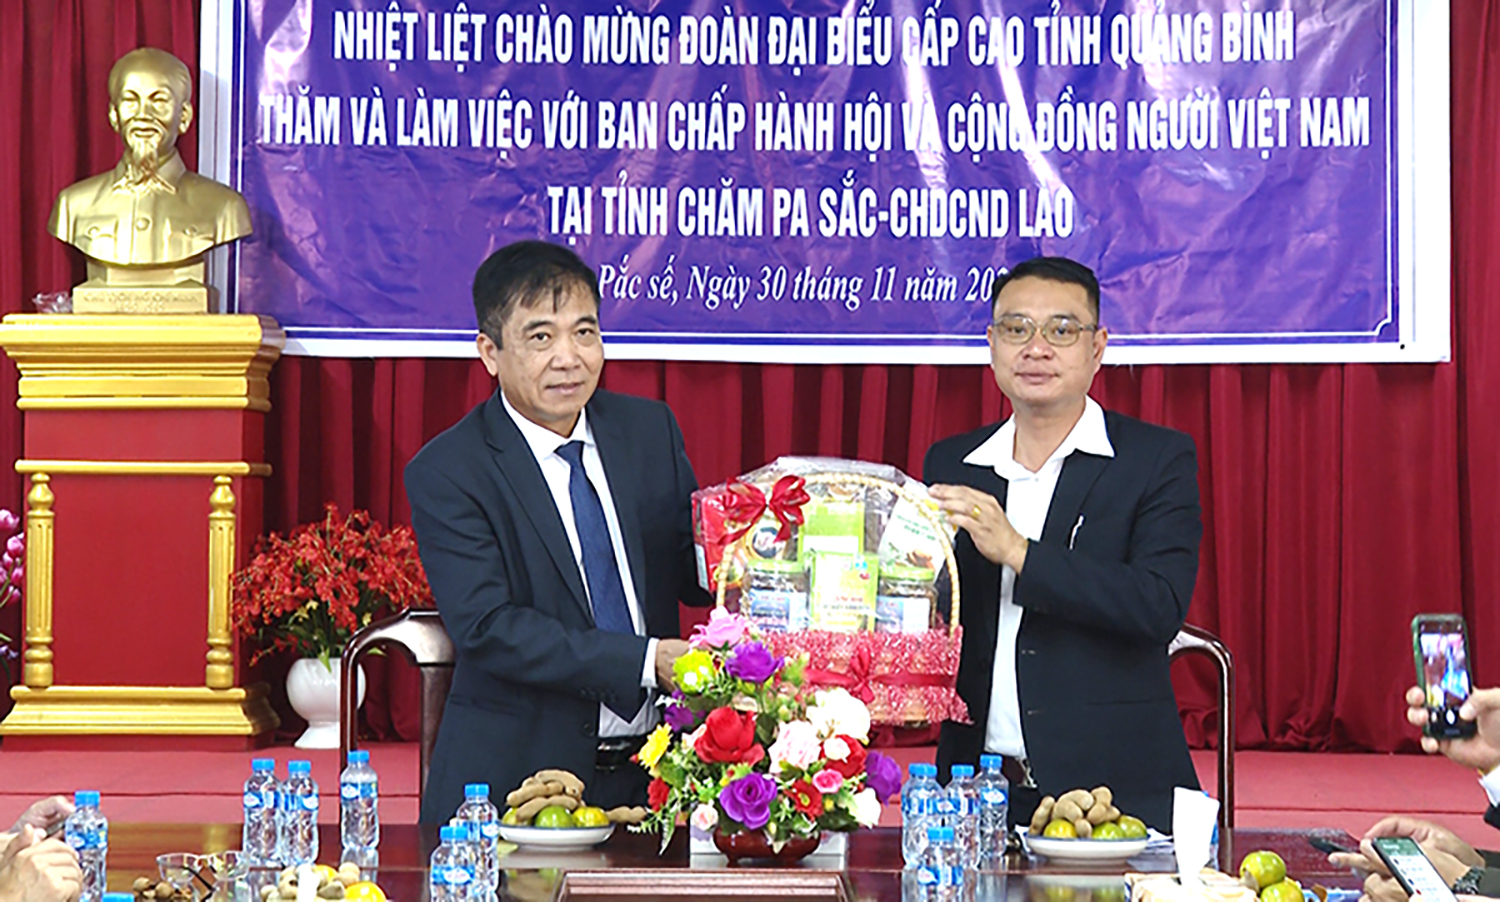 Lãnh đạo tỉnh thăm, tặng quà Hội Người Việt Nam tại tỉnh Chăm-pa-sắc